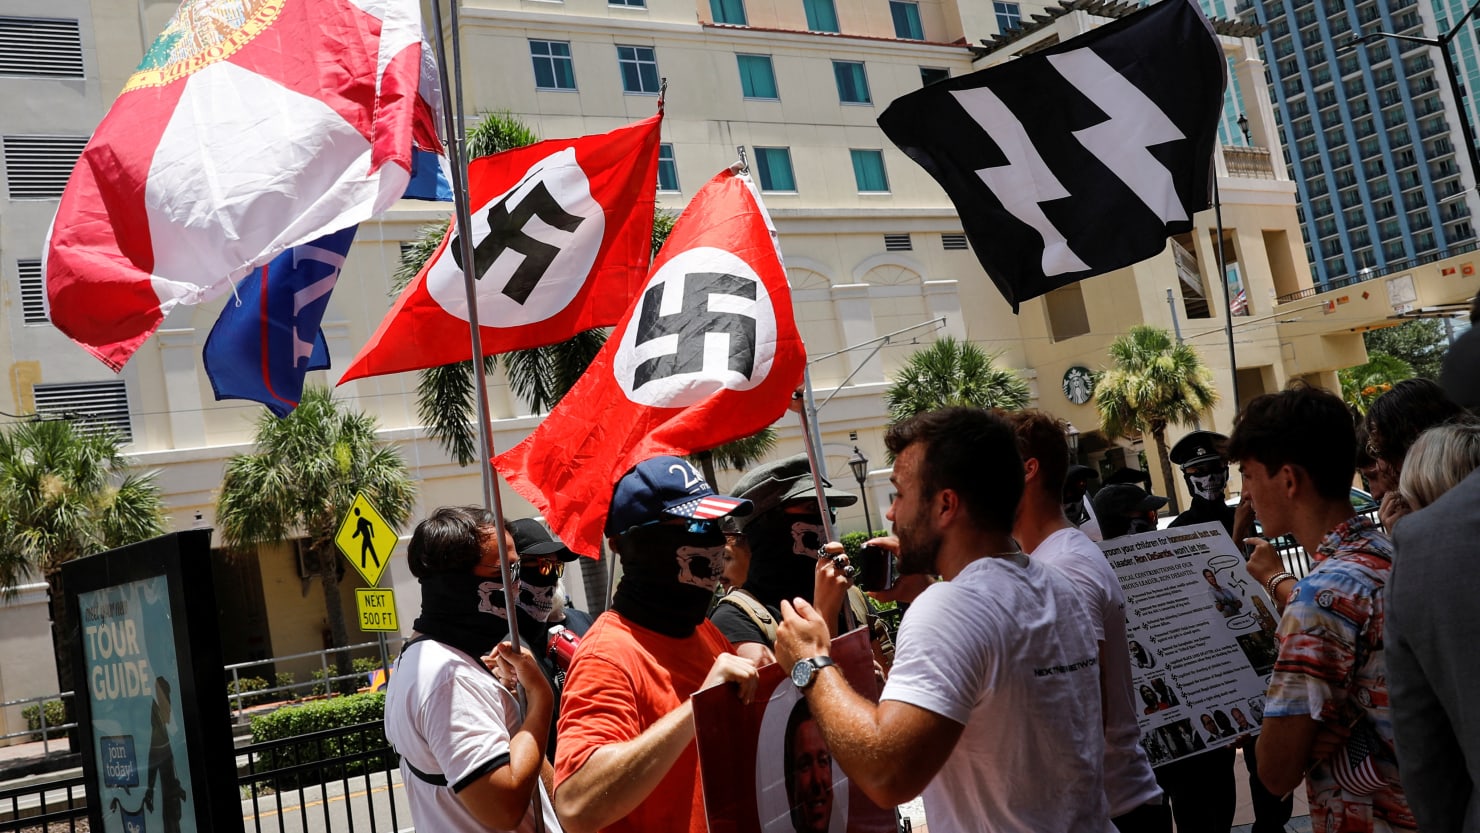 Neo-Nazis March Through Florida Park